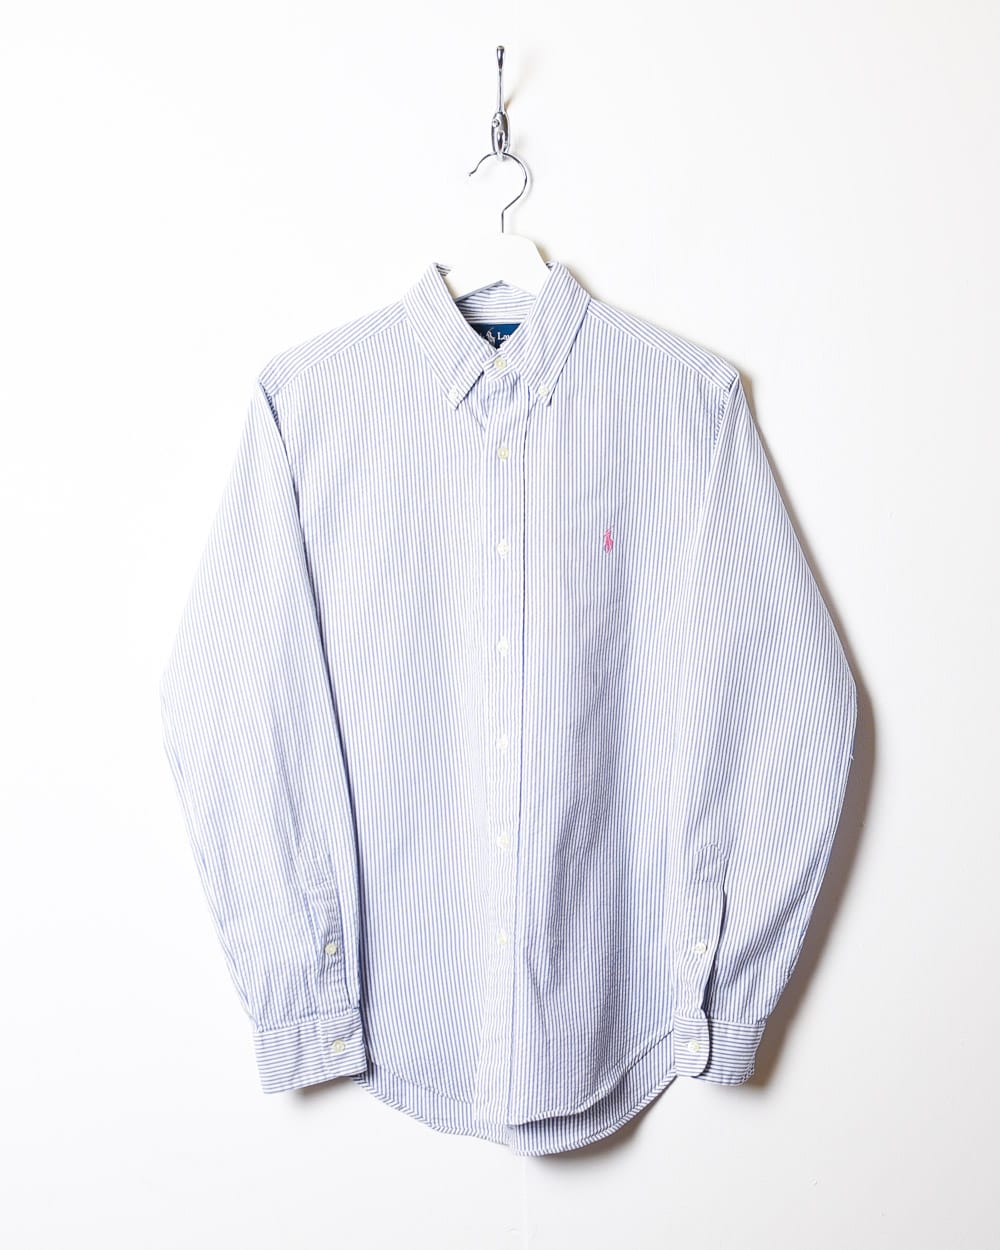 Blue Polo Ralph Lauren Striped Shirt - Small